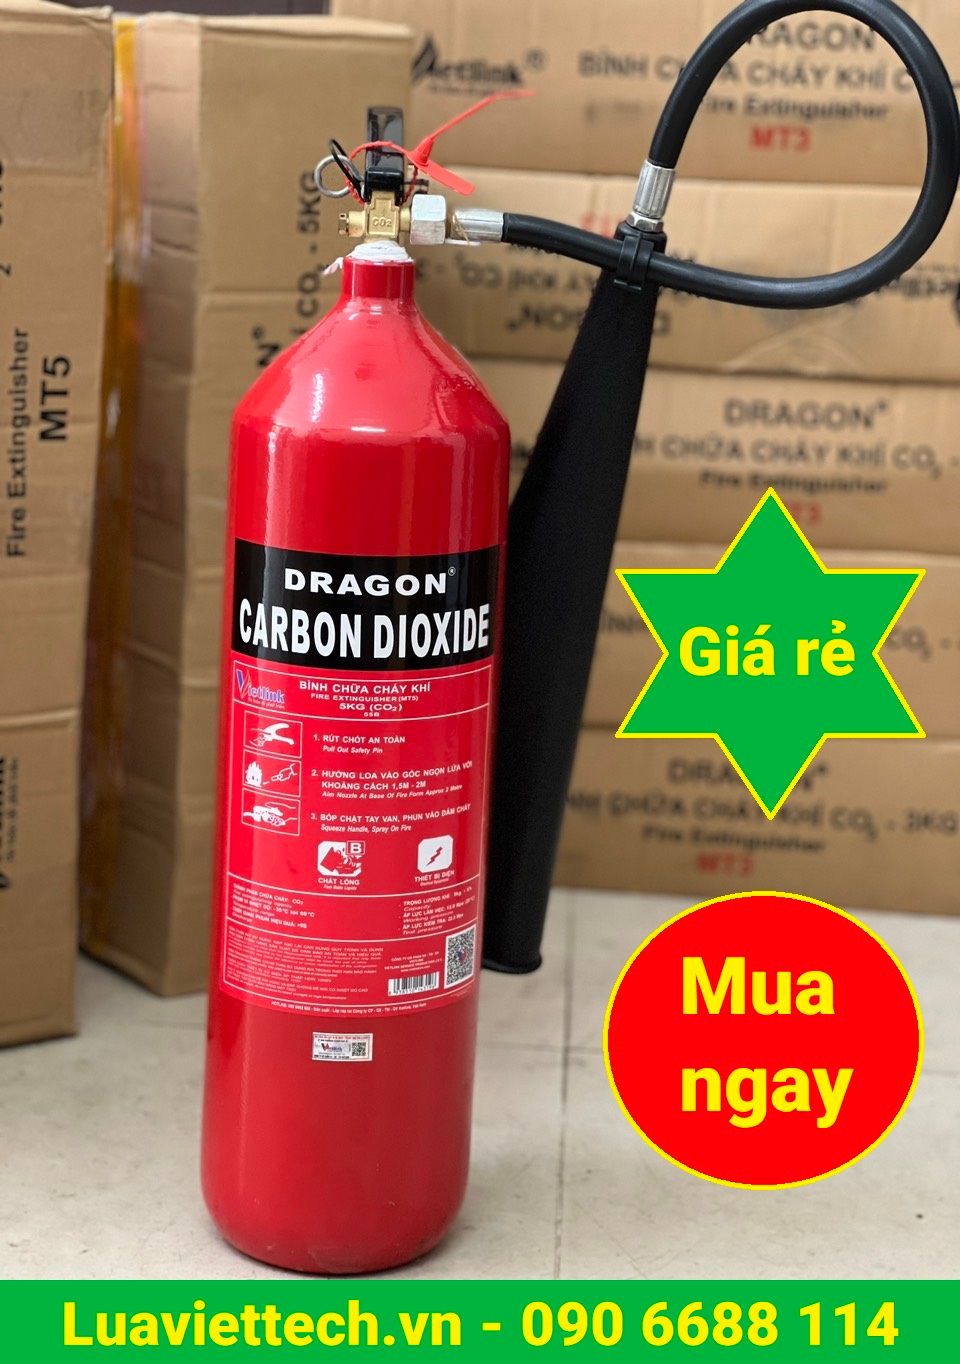  Bình chữa cháy khí CO2 5kg, hiệu Dragon/Việt Nam 